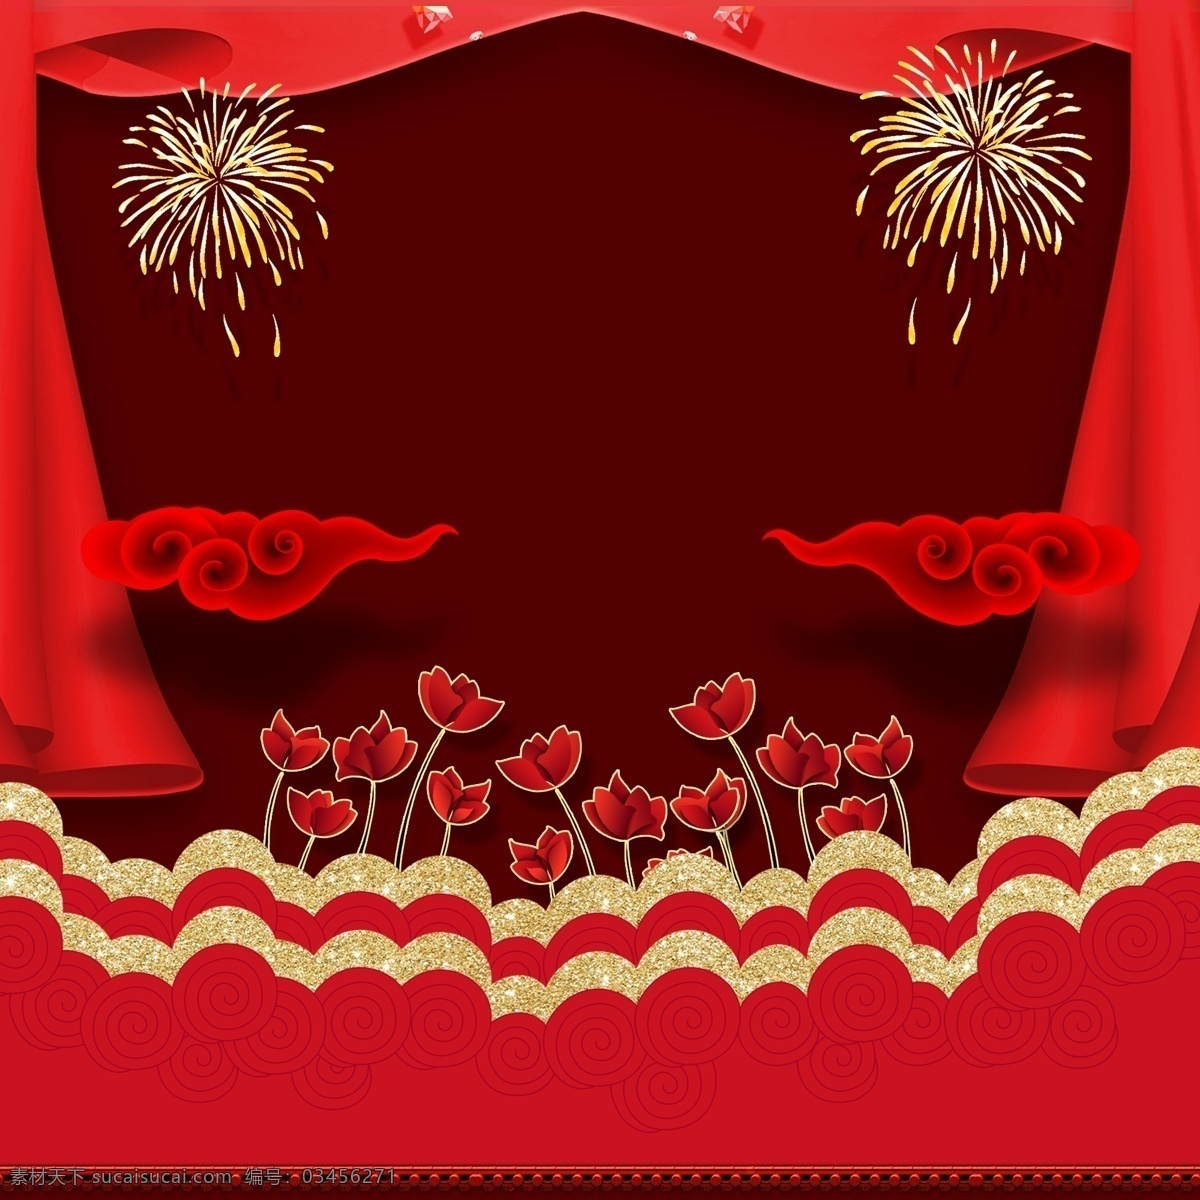 红色 节日 主 图 背景 中国风 节日背景 新年背景 烟花 花朵 主图背景 直通车